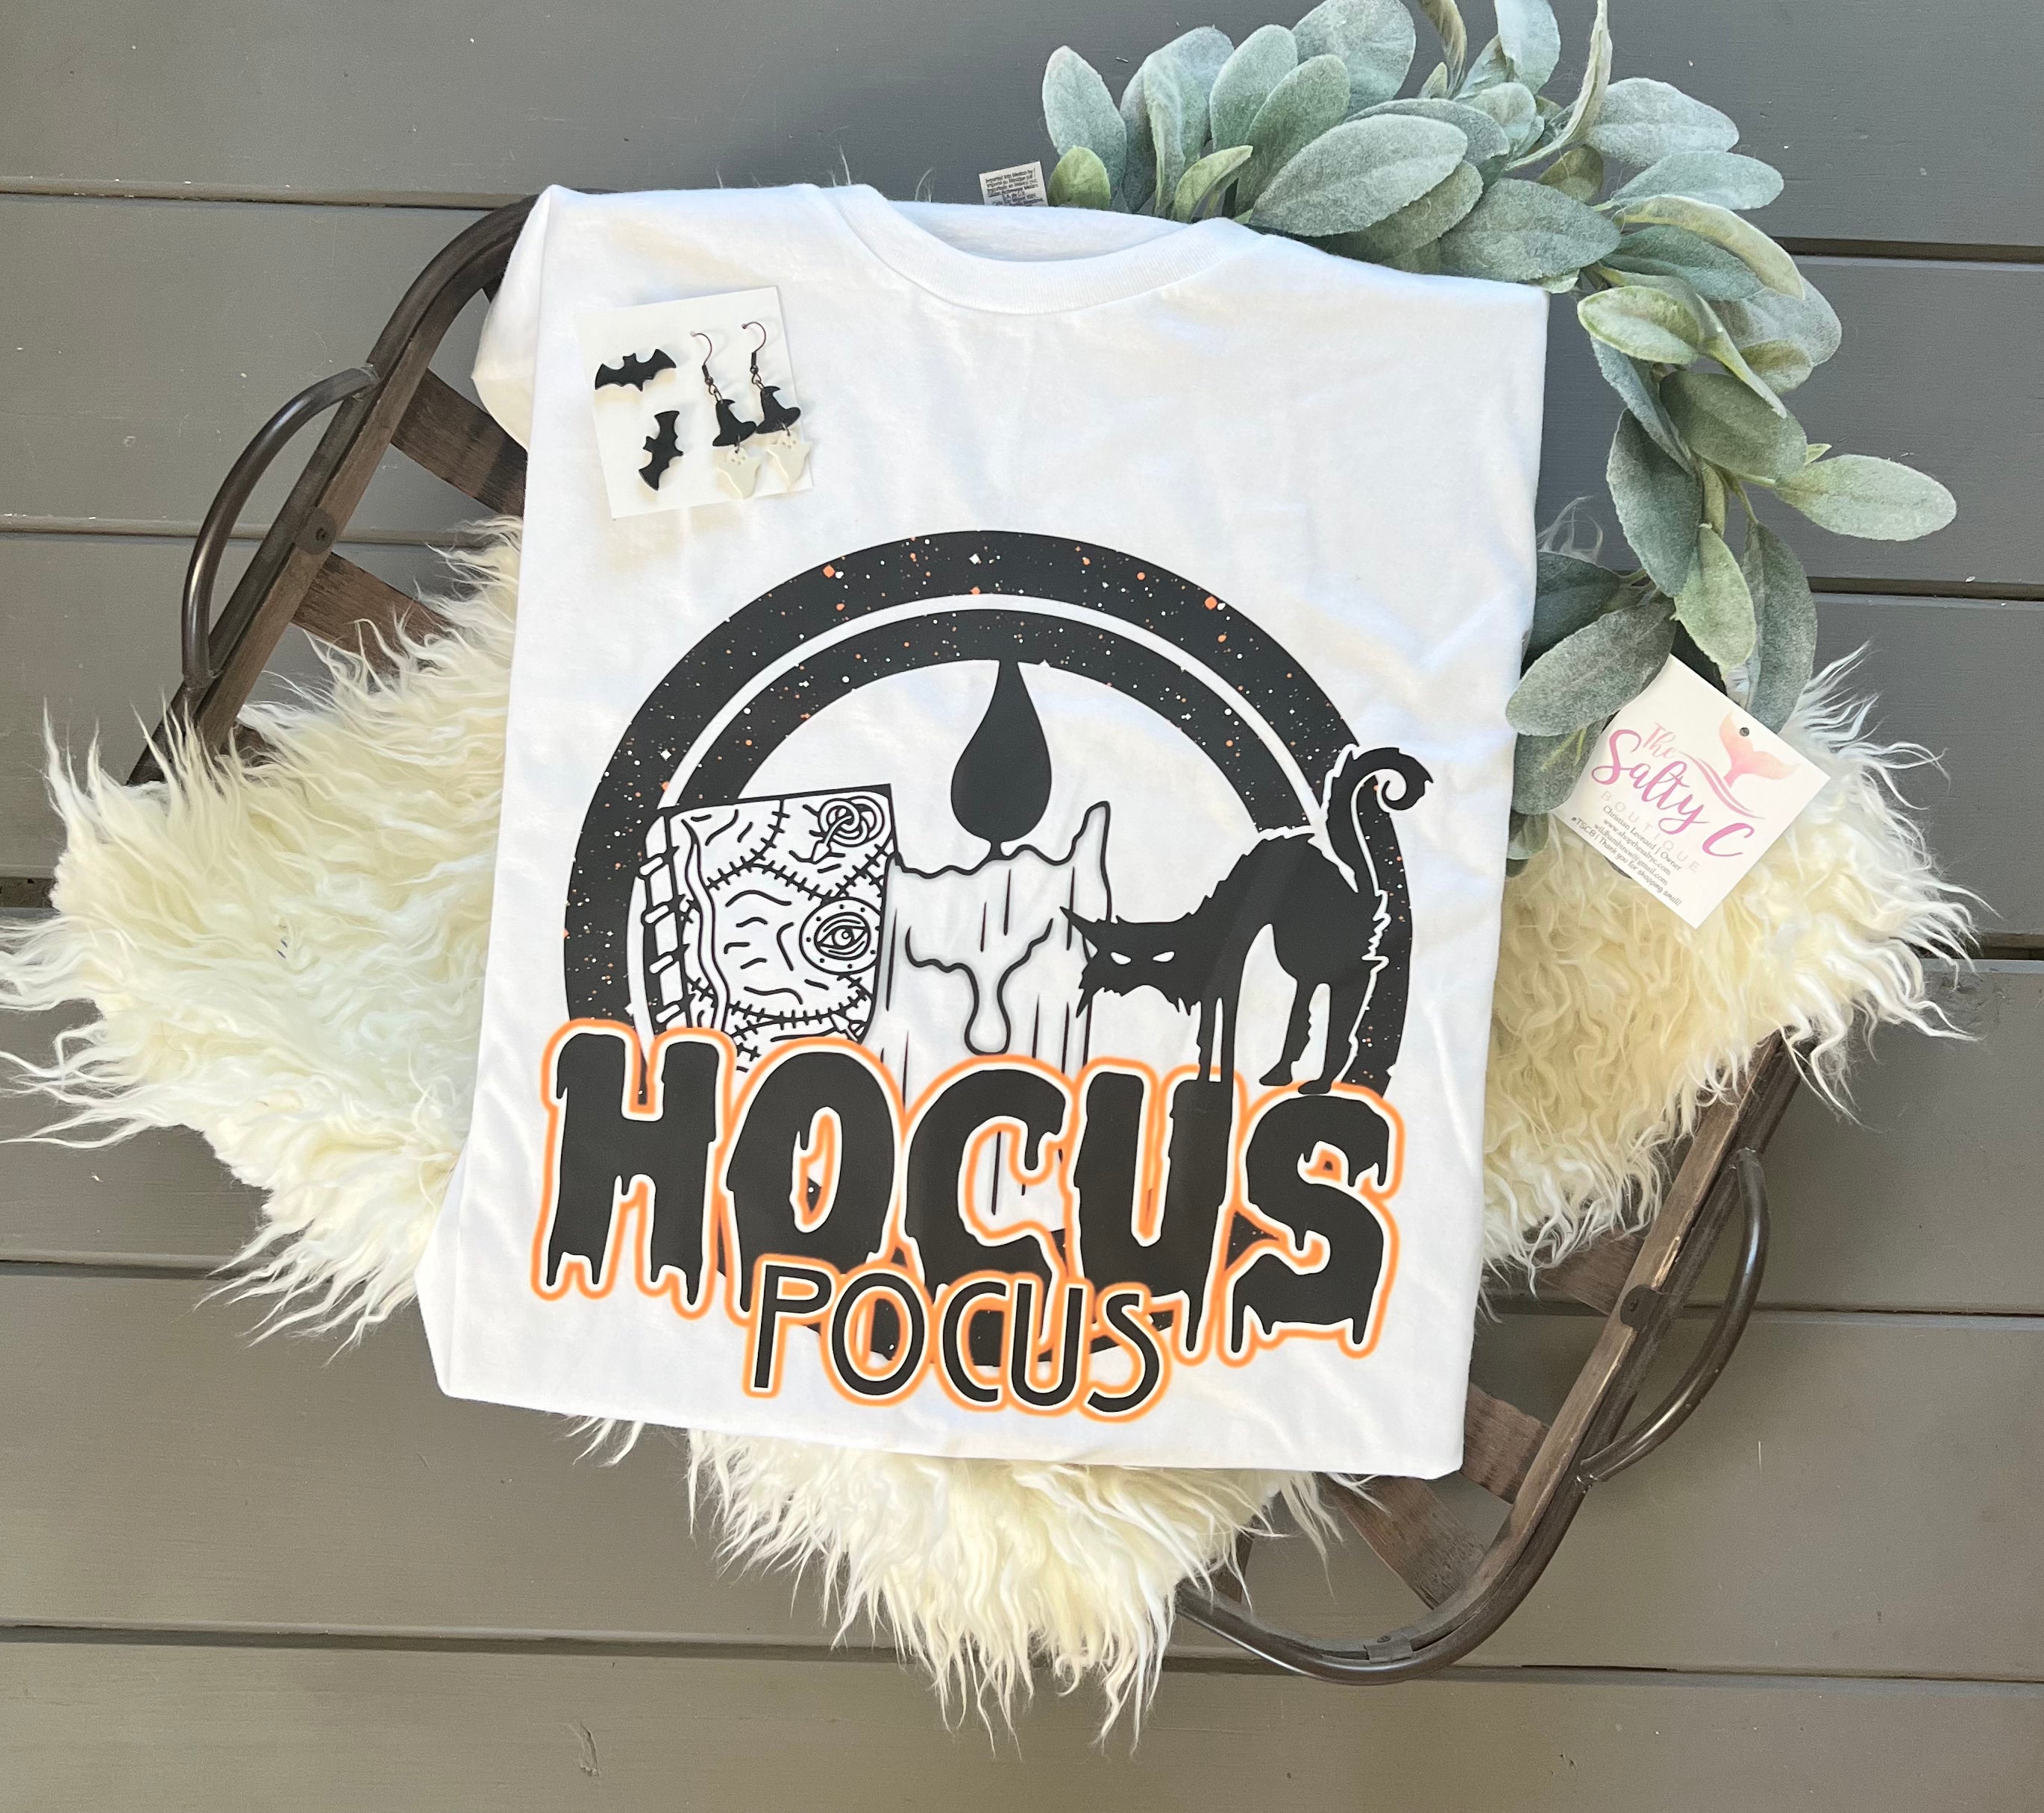 Hocus Pocus- book candle cat